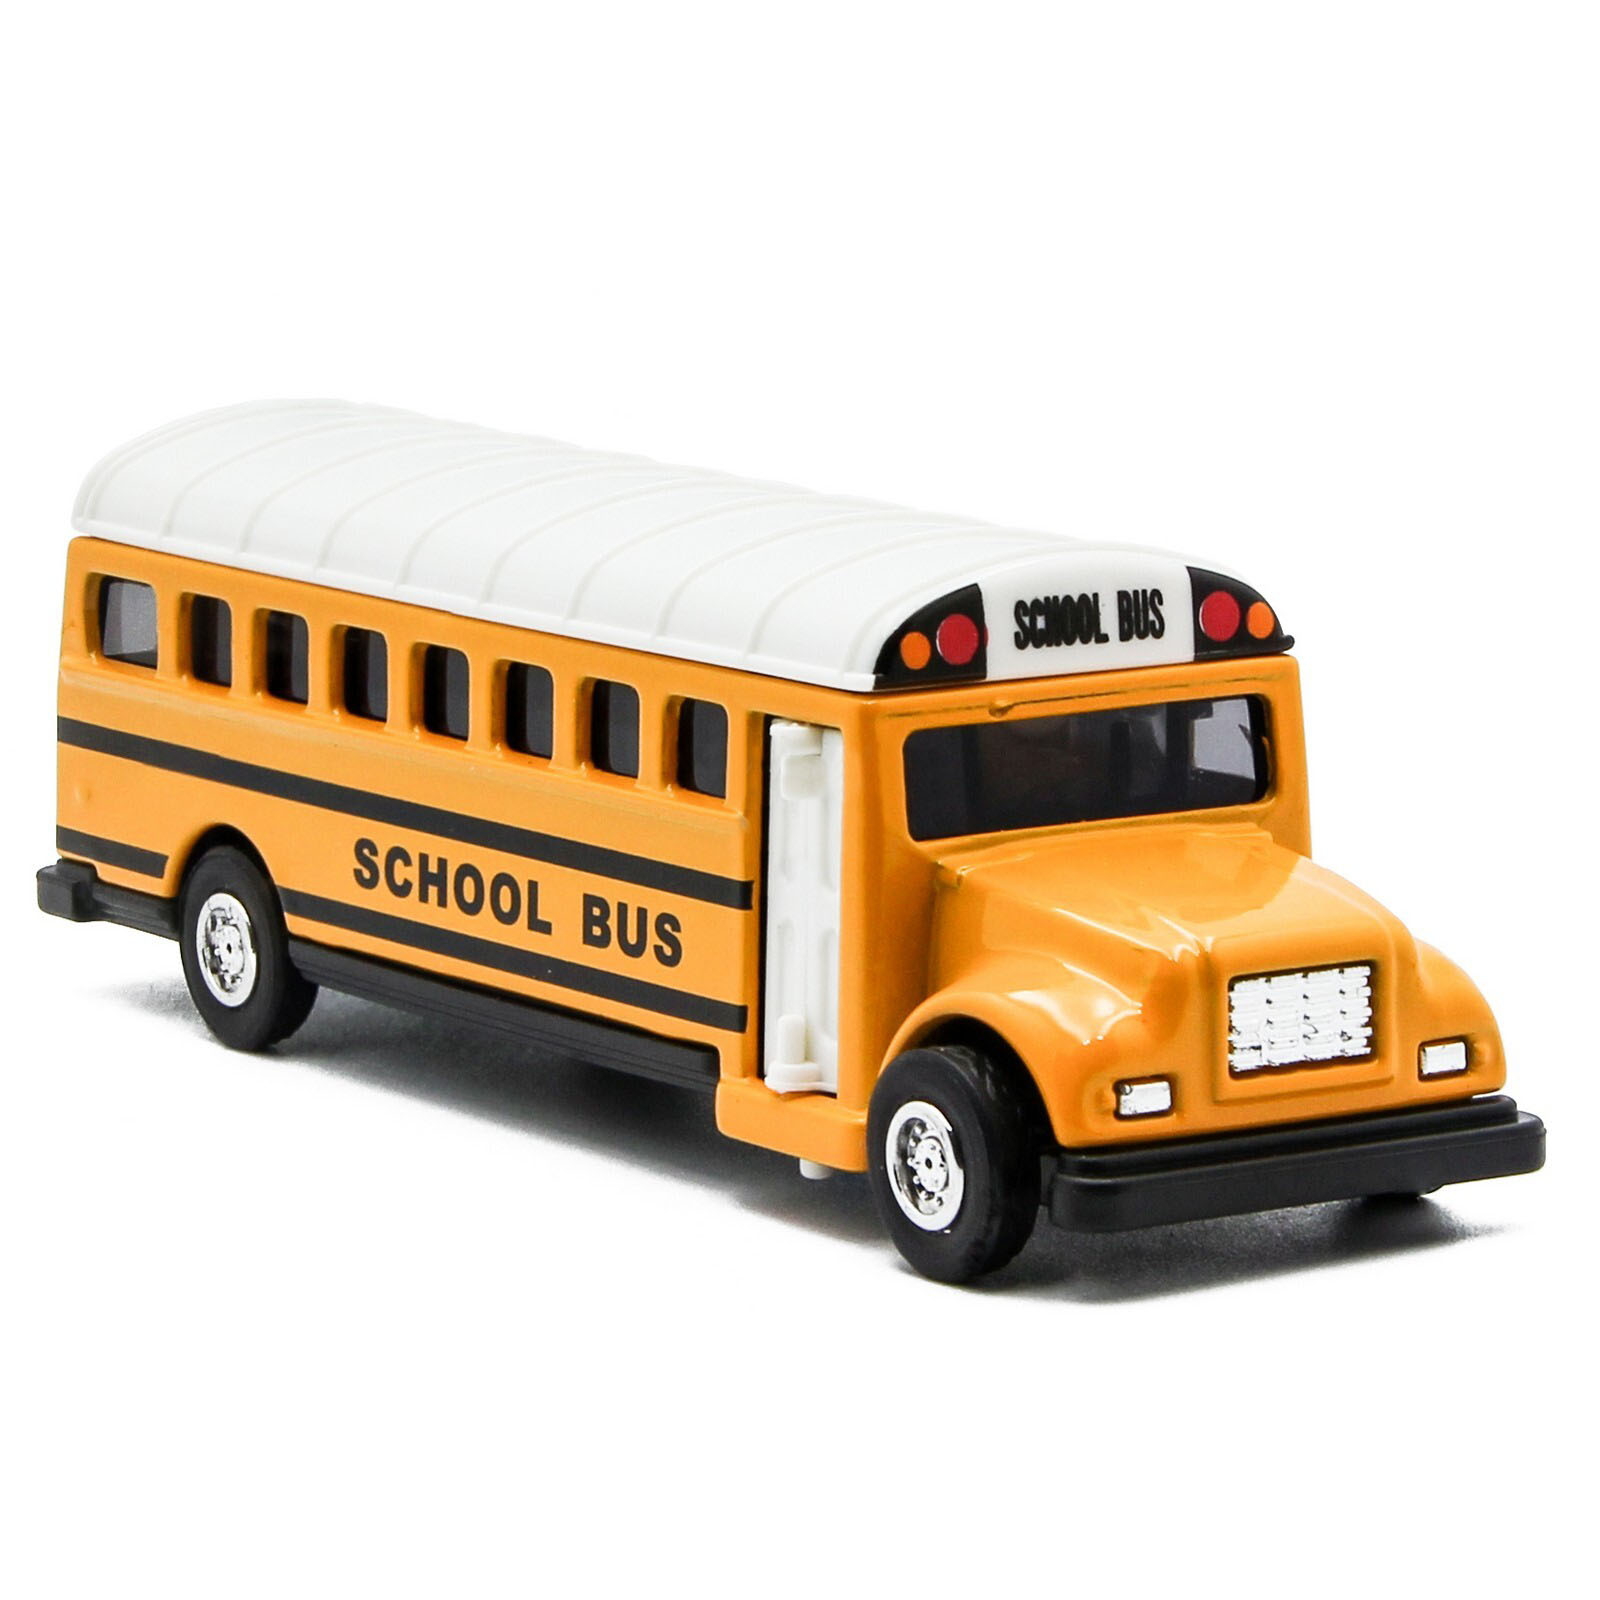 Машинка металлическая «Школьный автобус с баннером» 534, 11,5 см. инерционный / Микс